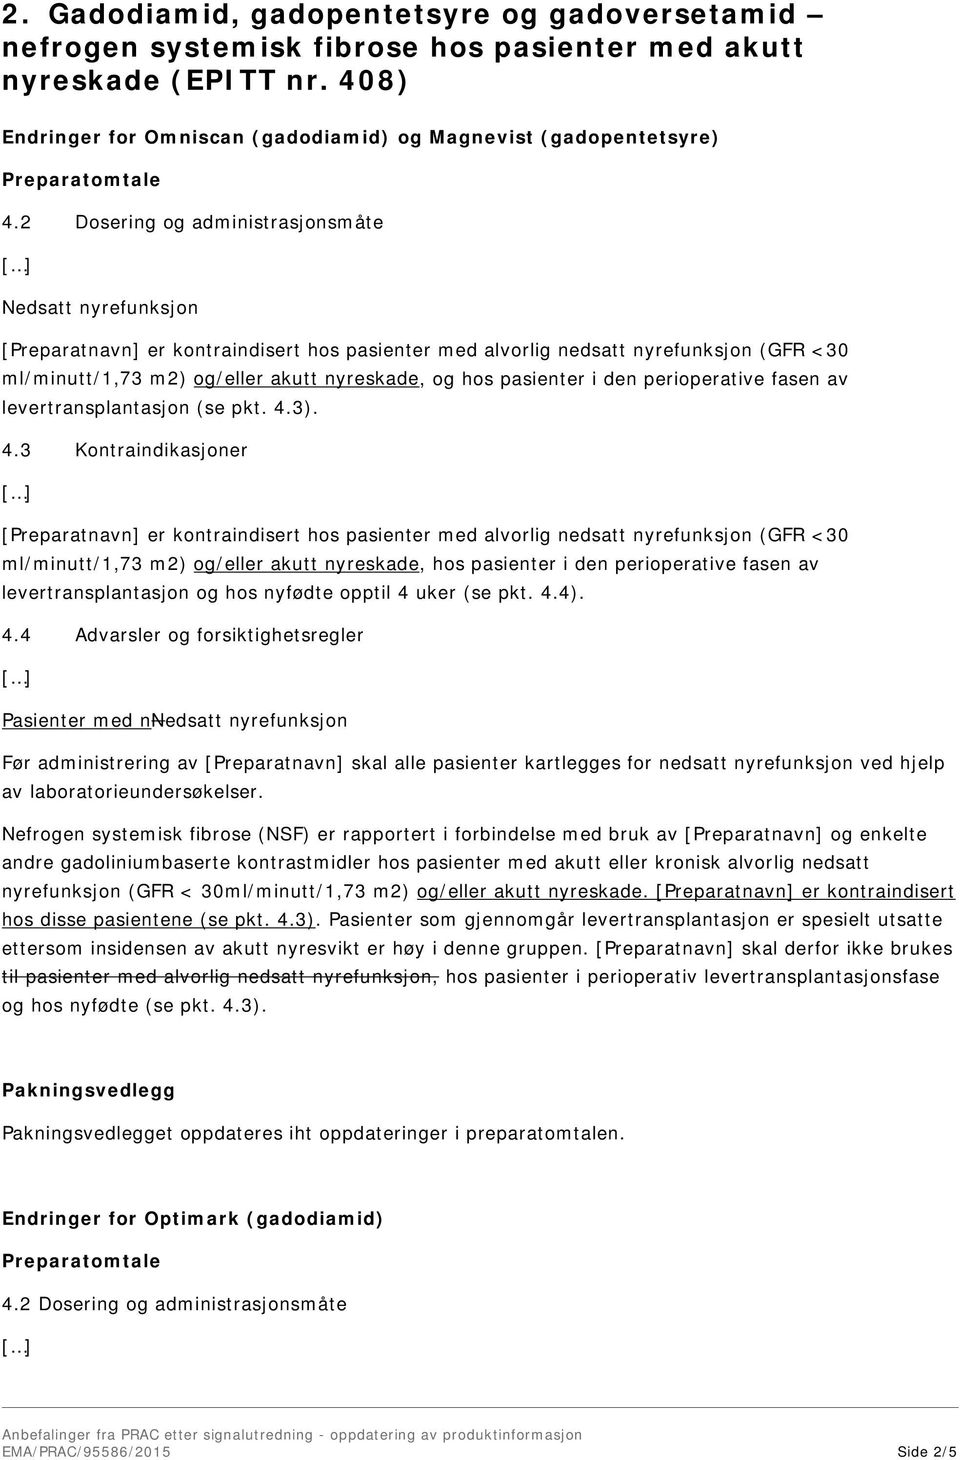 pasienter i den perioperative fasen av levertransplantasjon (se pkt. 4.3).